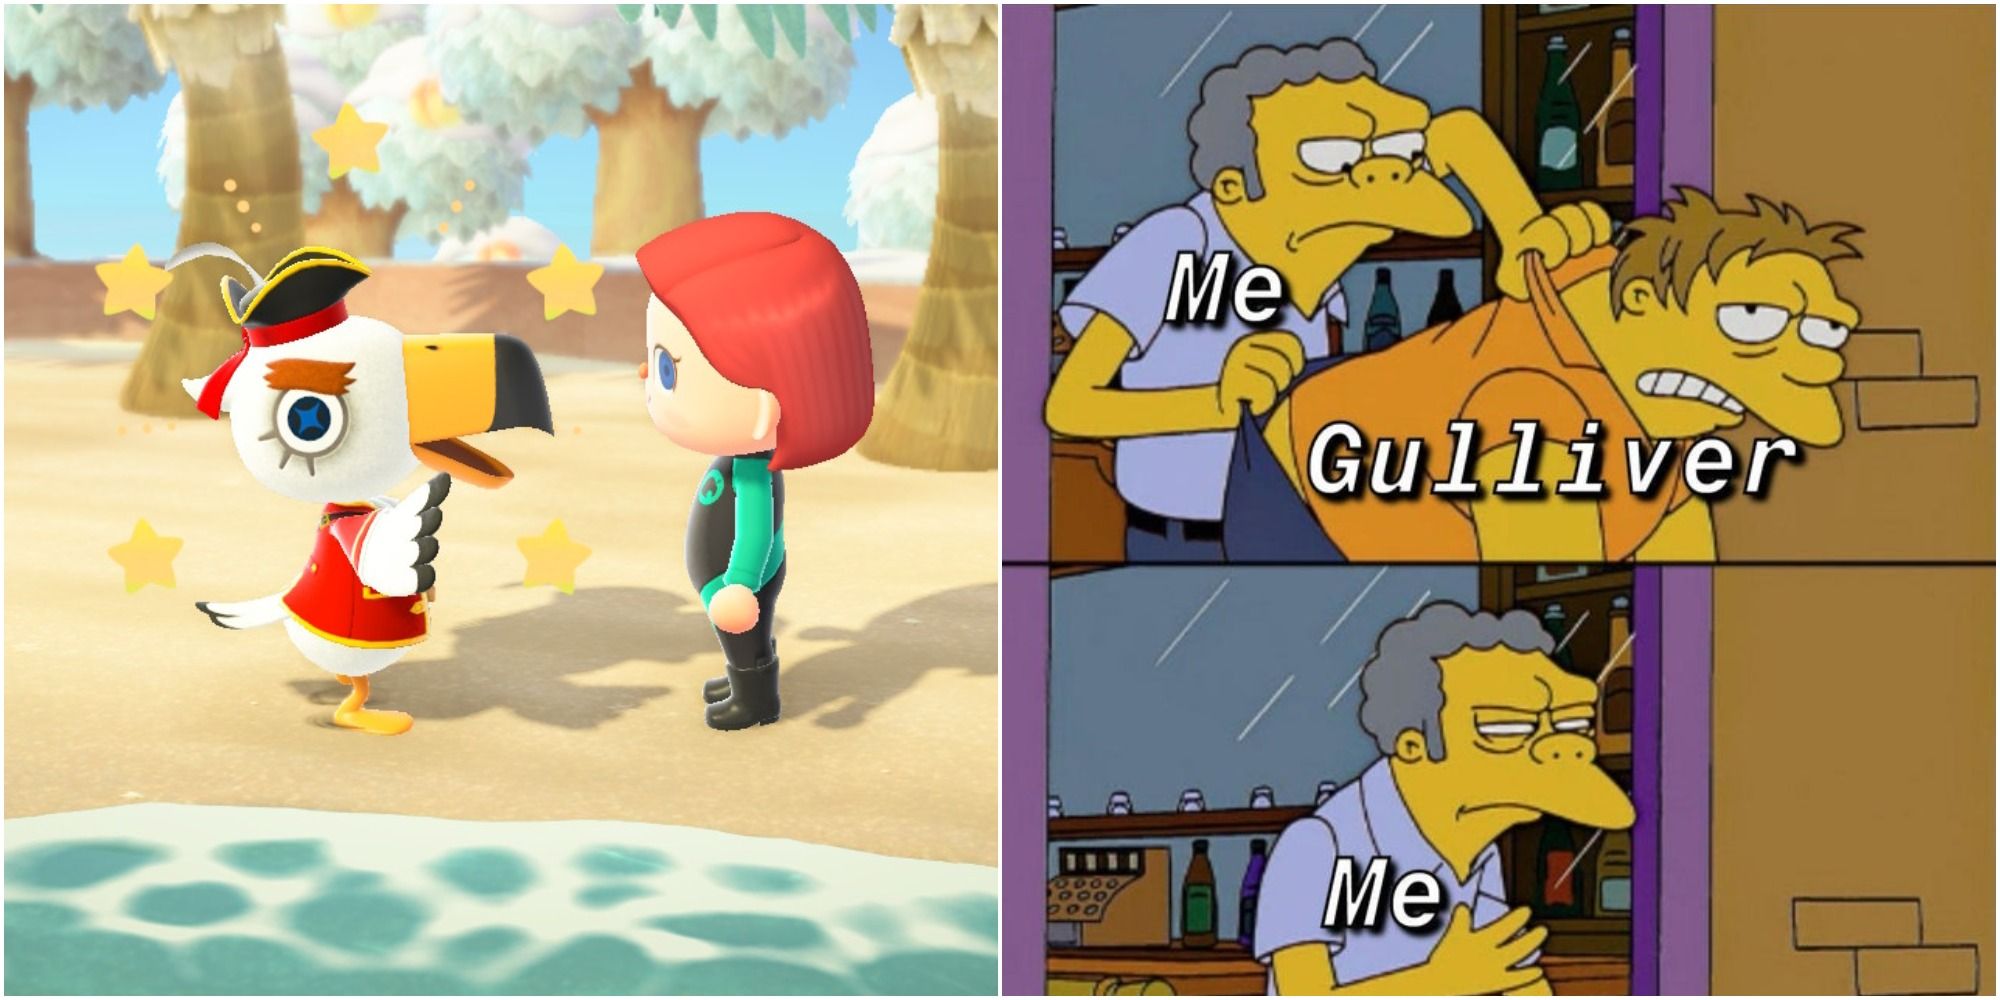 Gulliver and Gullivarrr Memes Animal Crossing New Horizons.Jpg